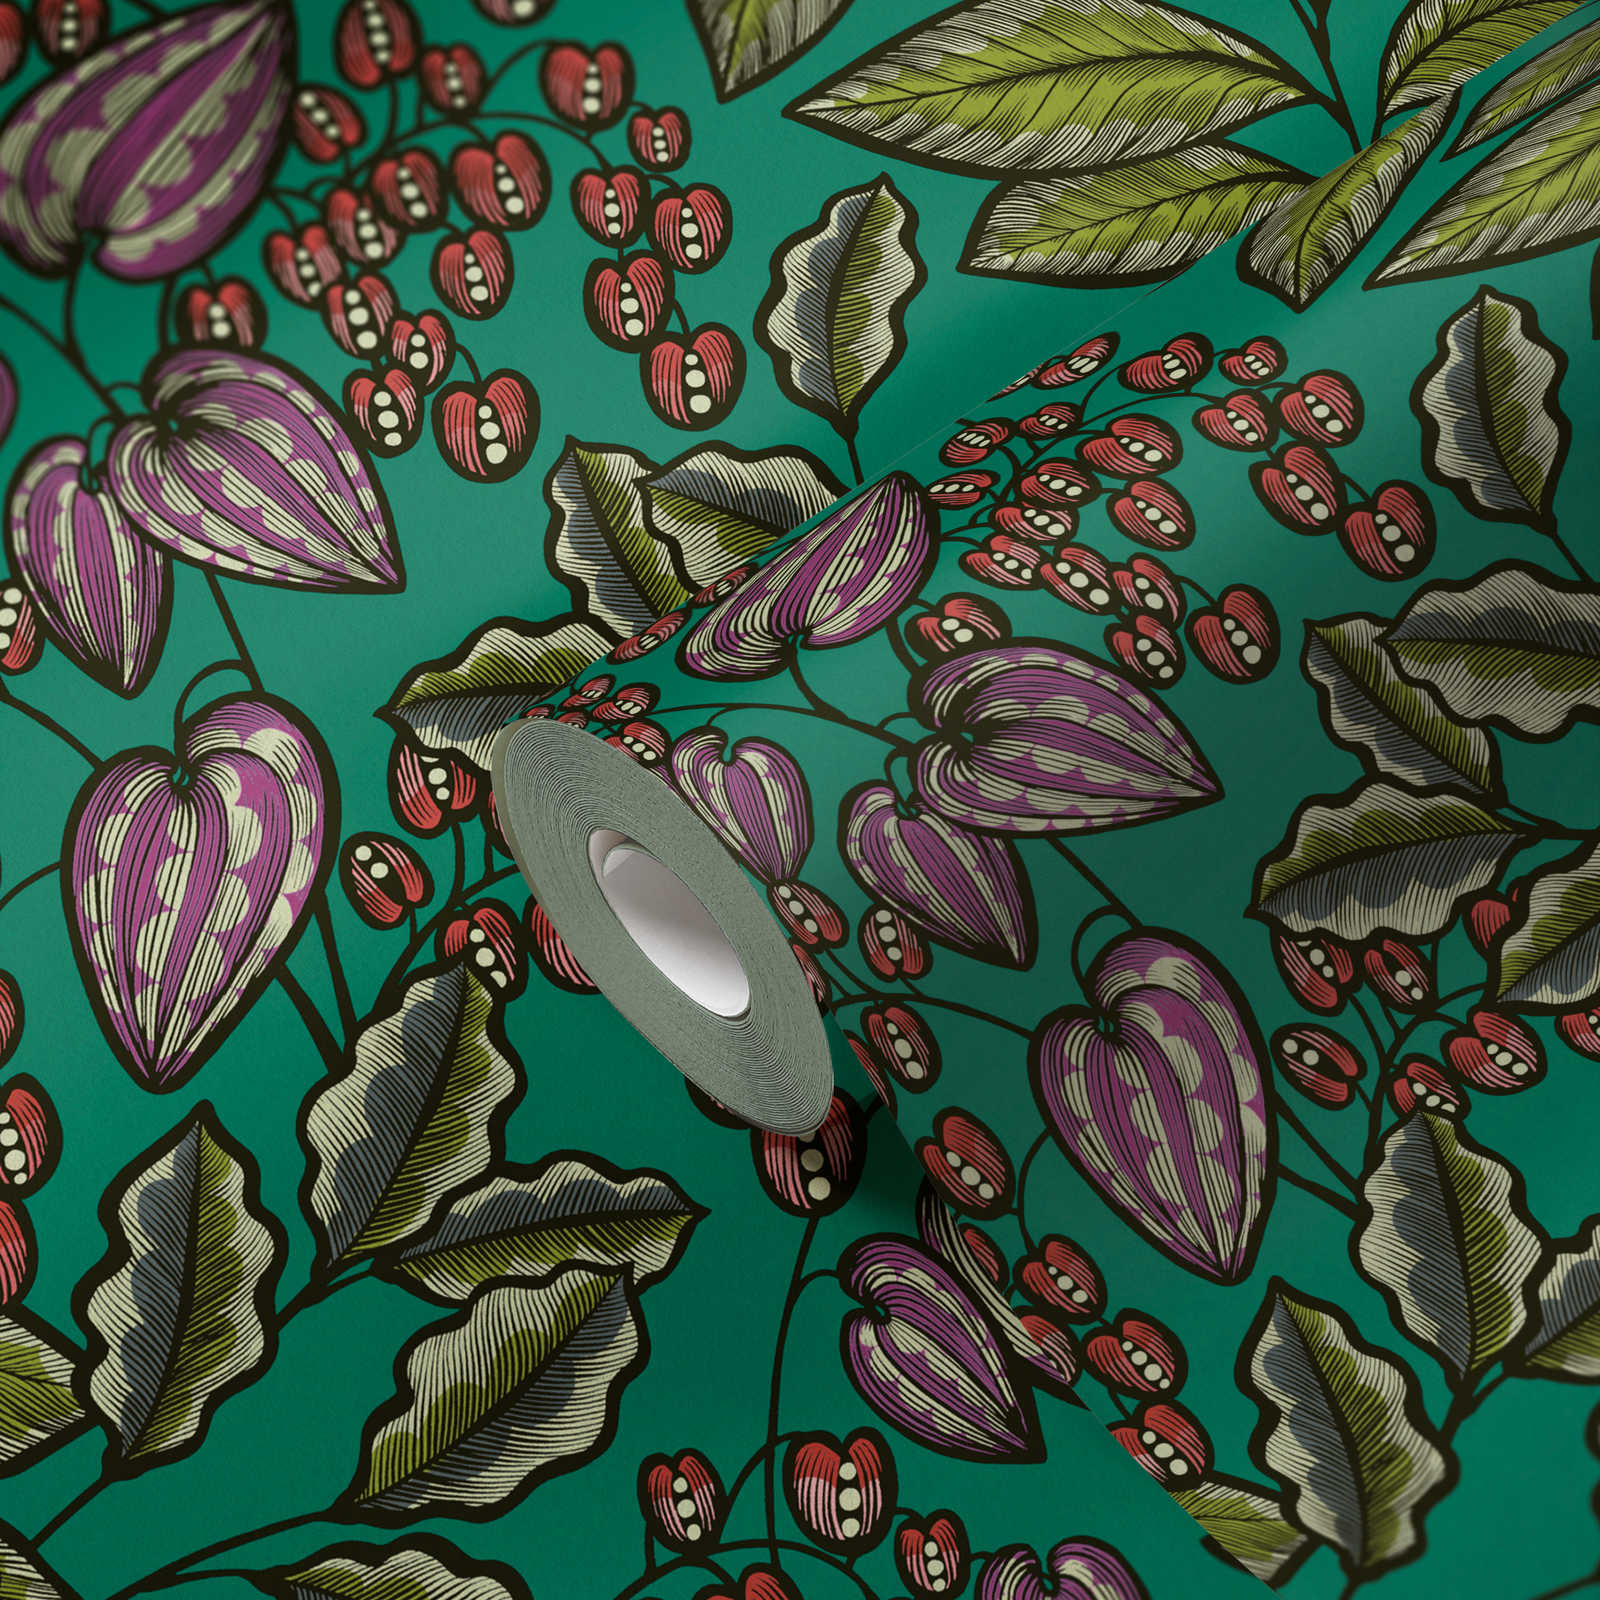             Tapete Grün mit Blätter Motiv im Scandi Design – Grün, Rot, Lila
        